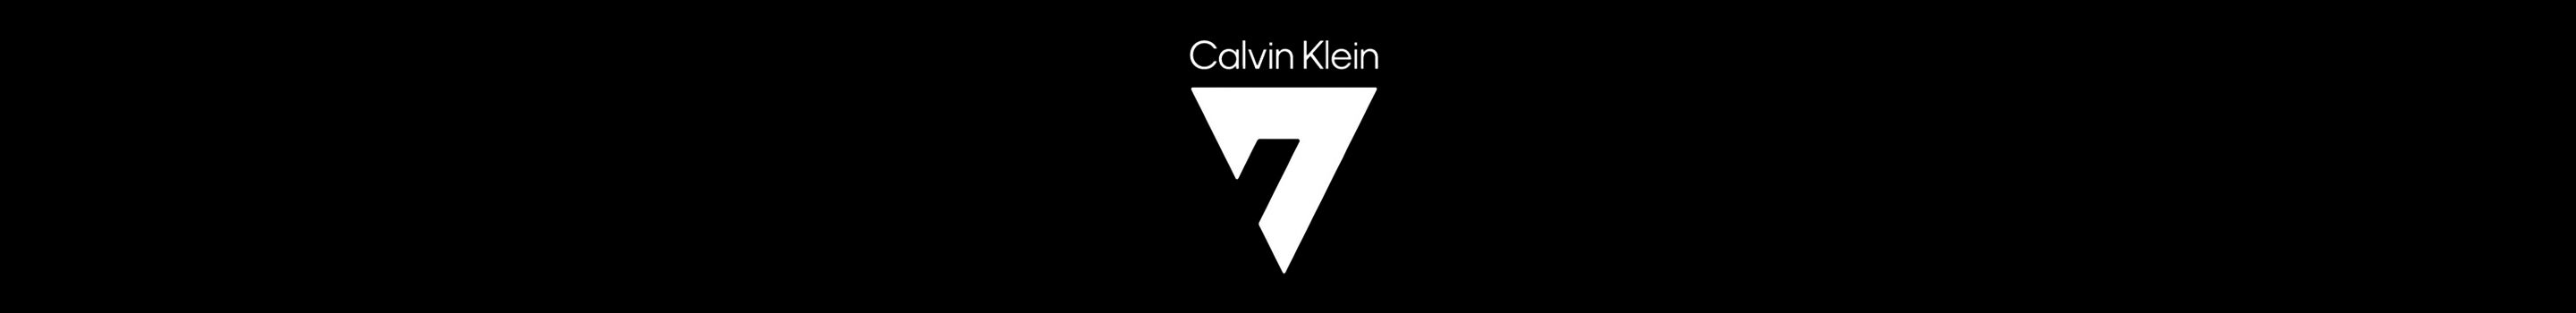 Son Heung-Min for Calvin Klein